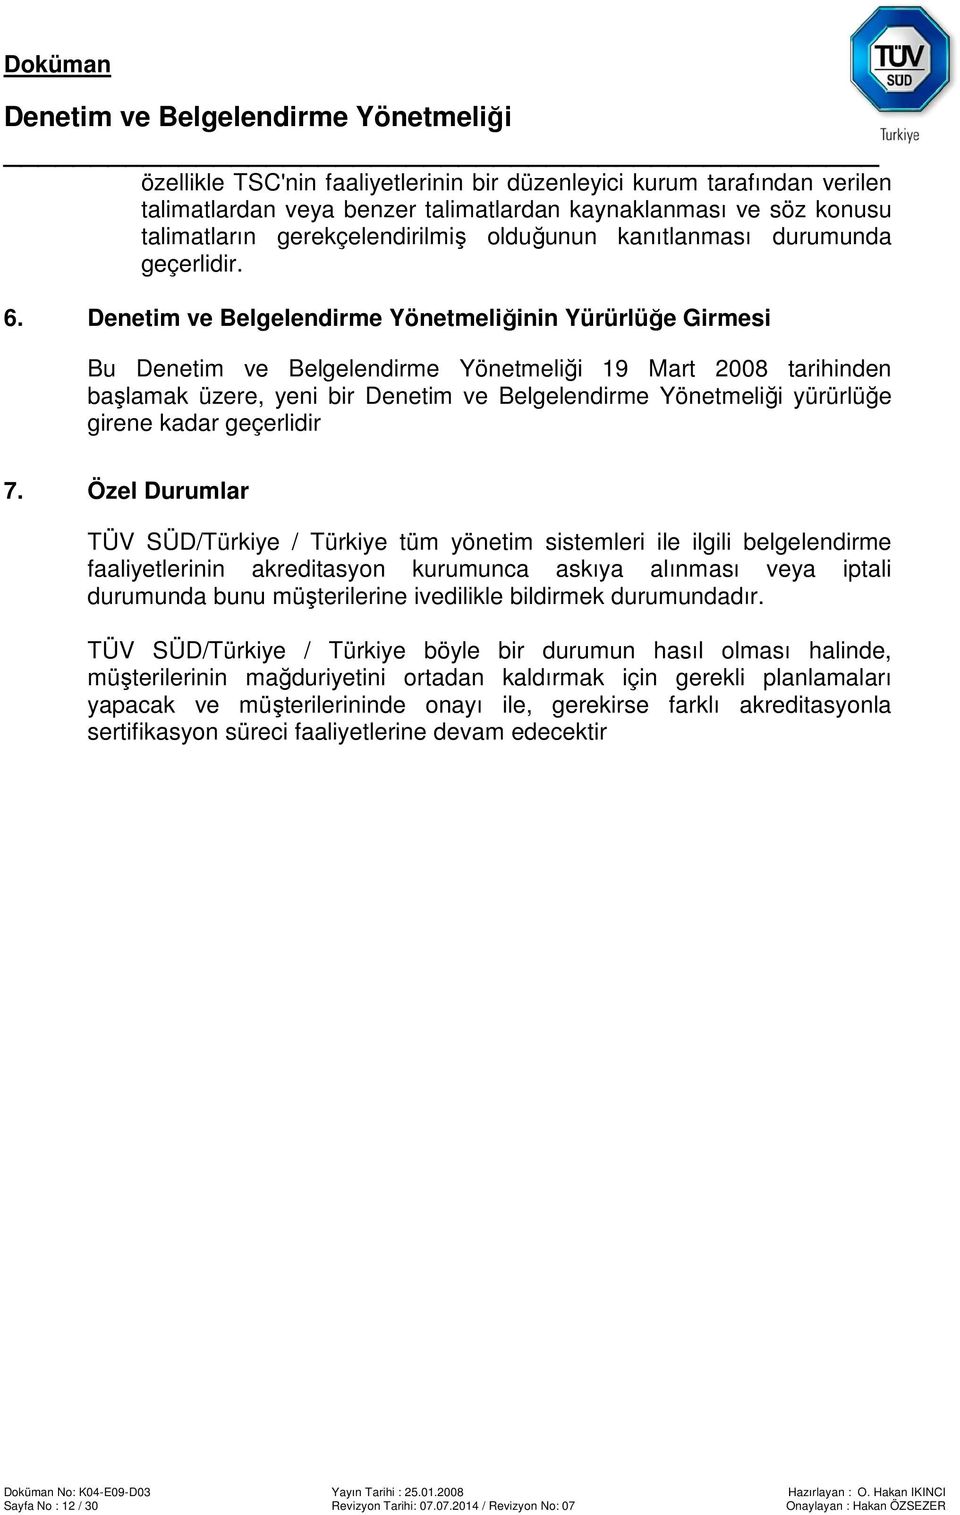 Özel Durumlar TÜV SÜD/Türkiye / Türkiye tüm yönetim sistemleri ile ilgili belgelendirme faaliyetlerinin akreditasyon kurumunca askıya alınması veya iptali durumunda bunu müşterilerine ivedilikle